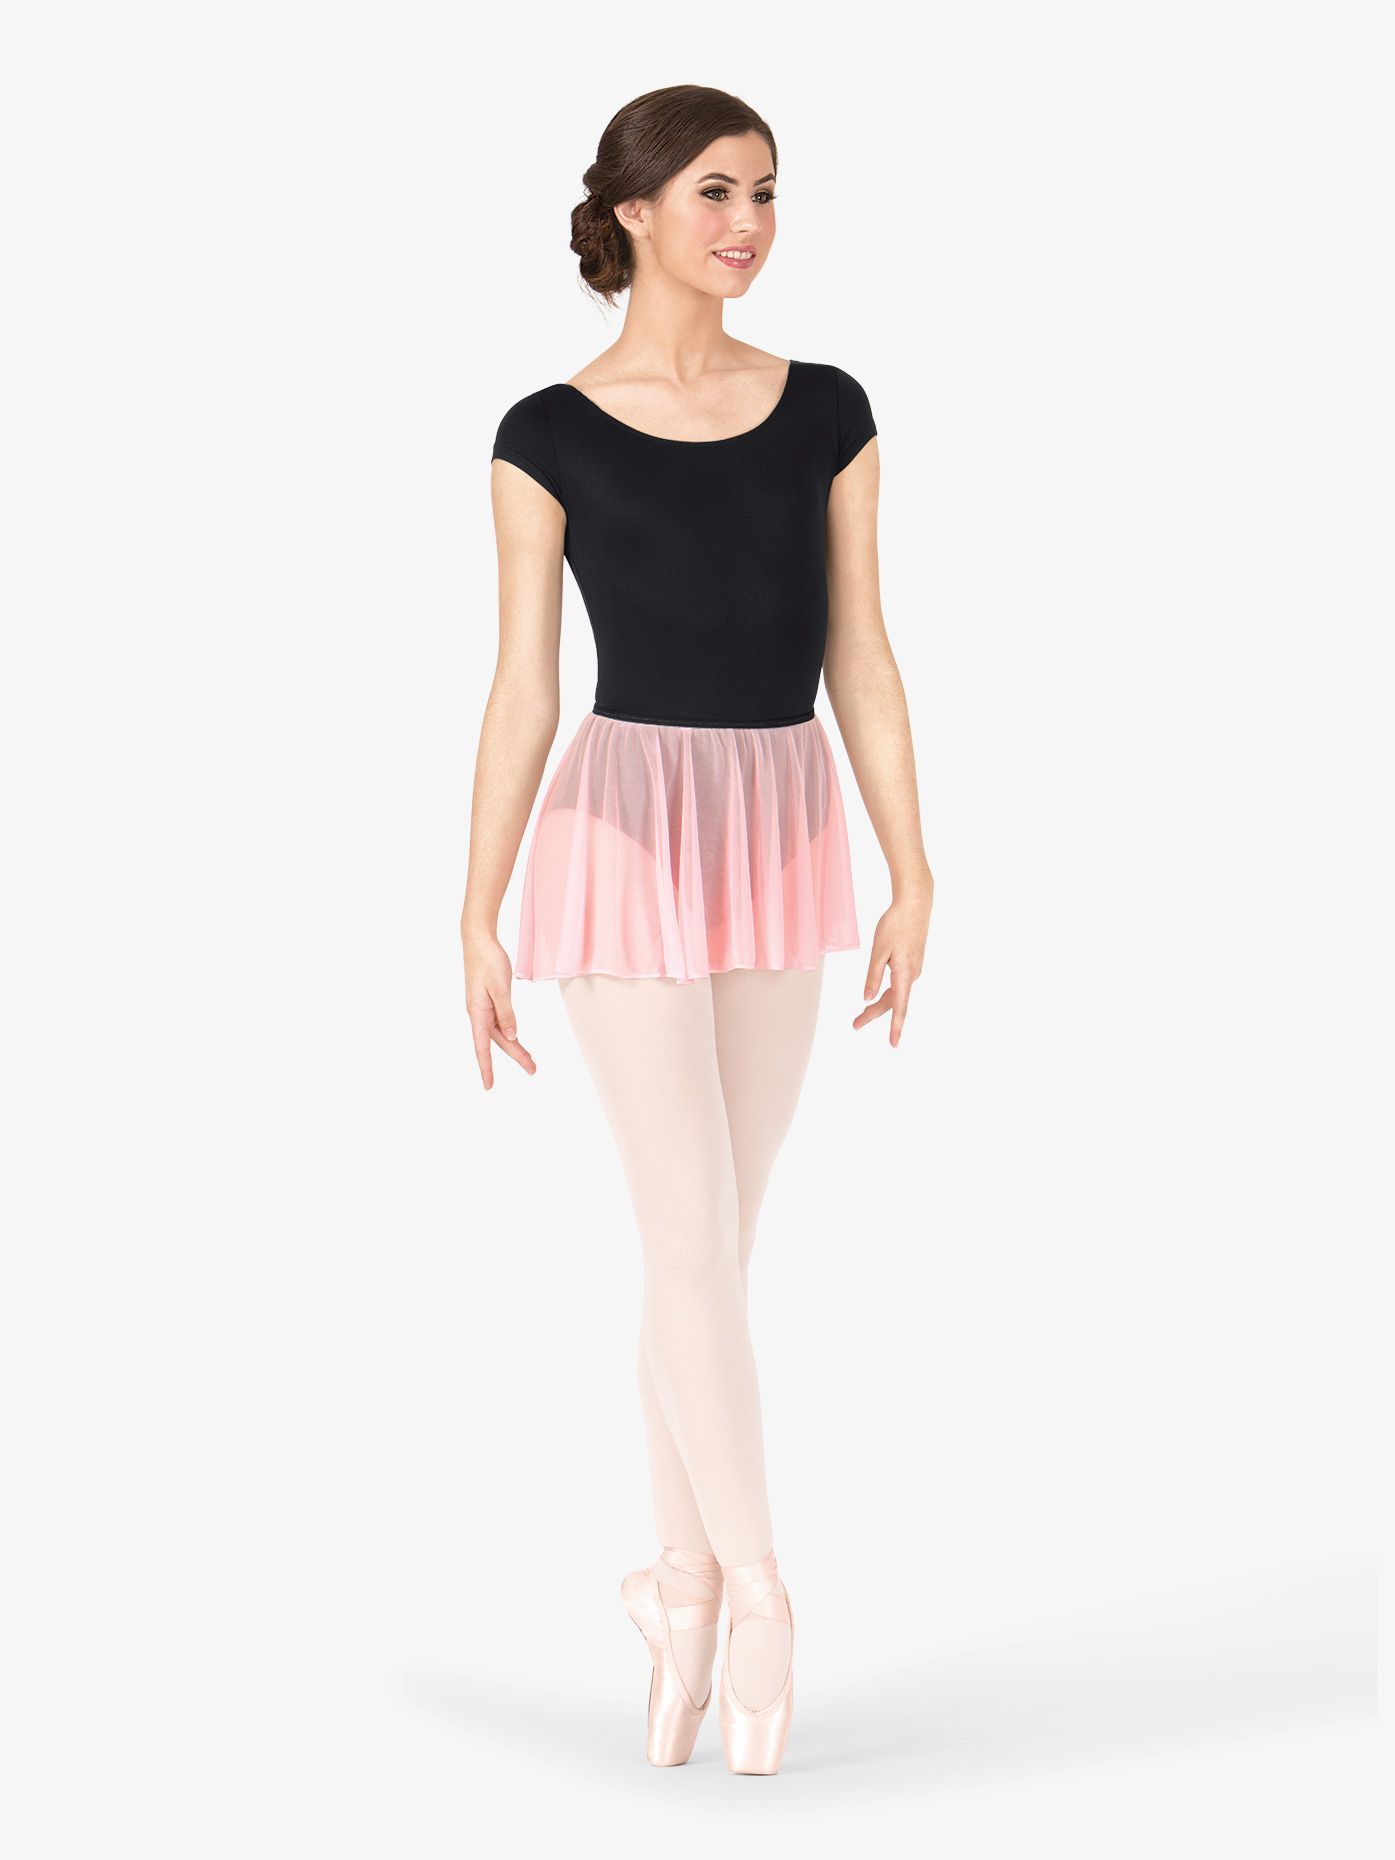 Adult Essential Cap Sleeve Leotard - Adult Essential Cap Sleeve Leotard -   15 ballet fitness Clothes ideas